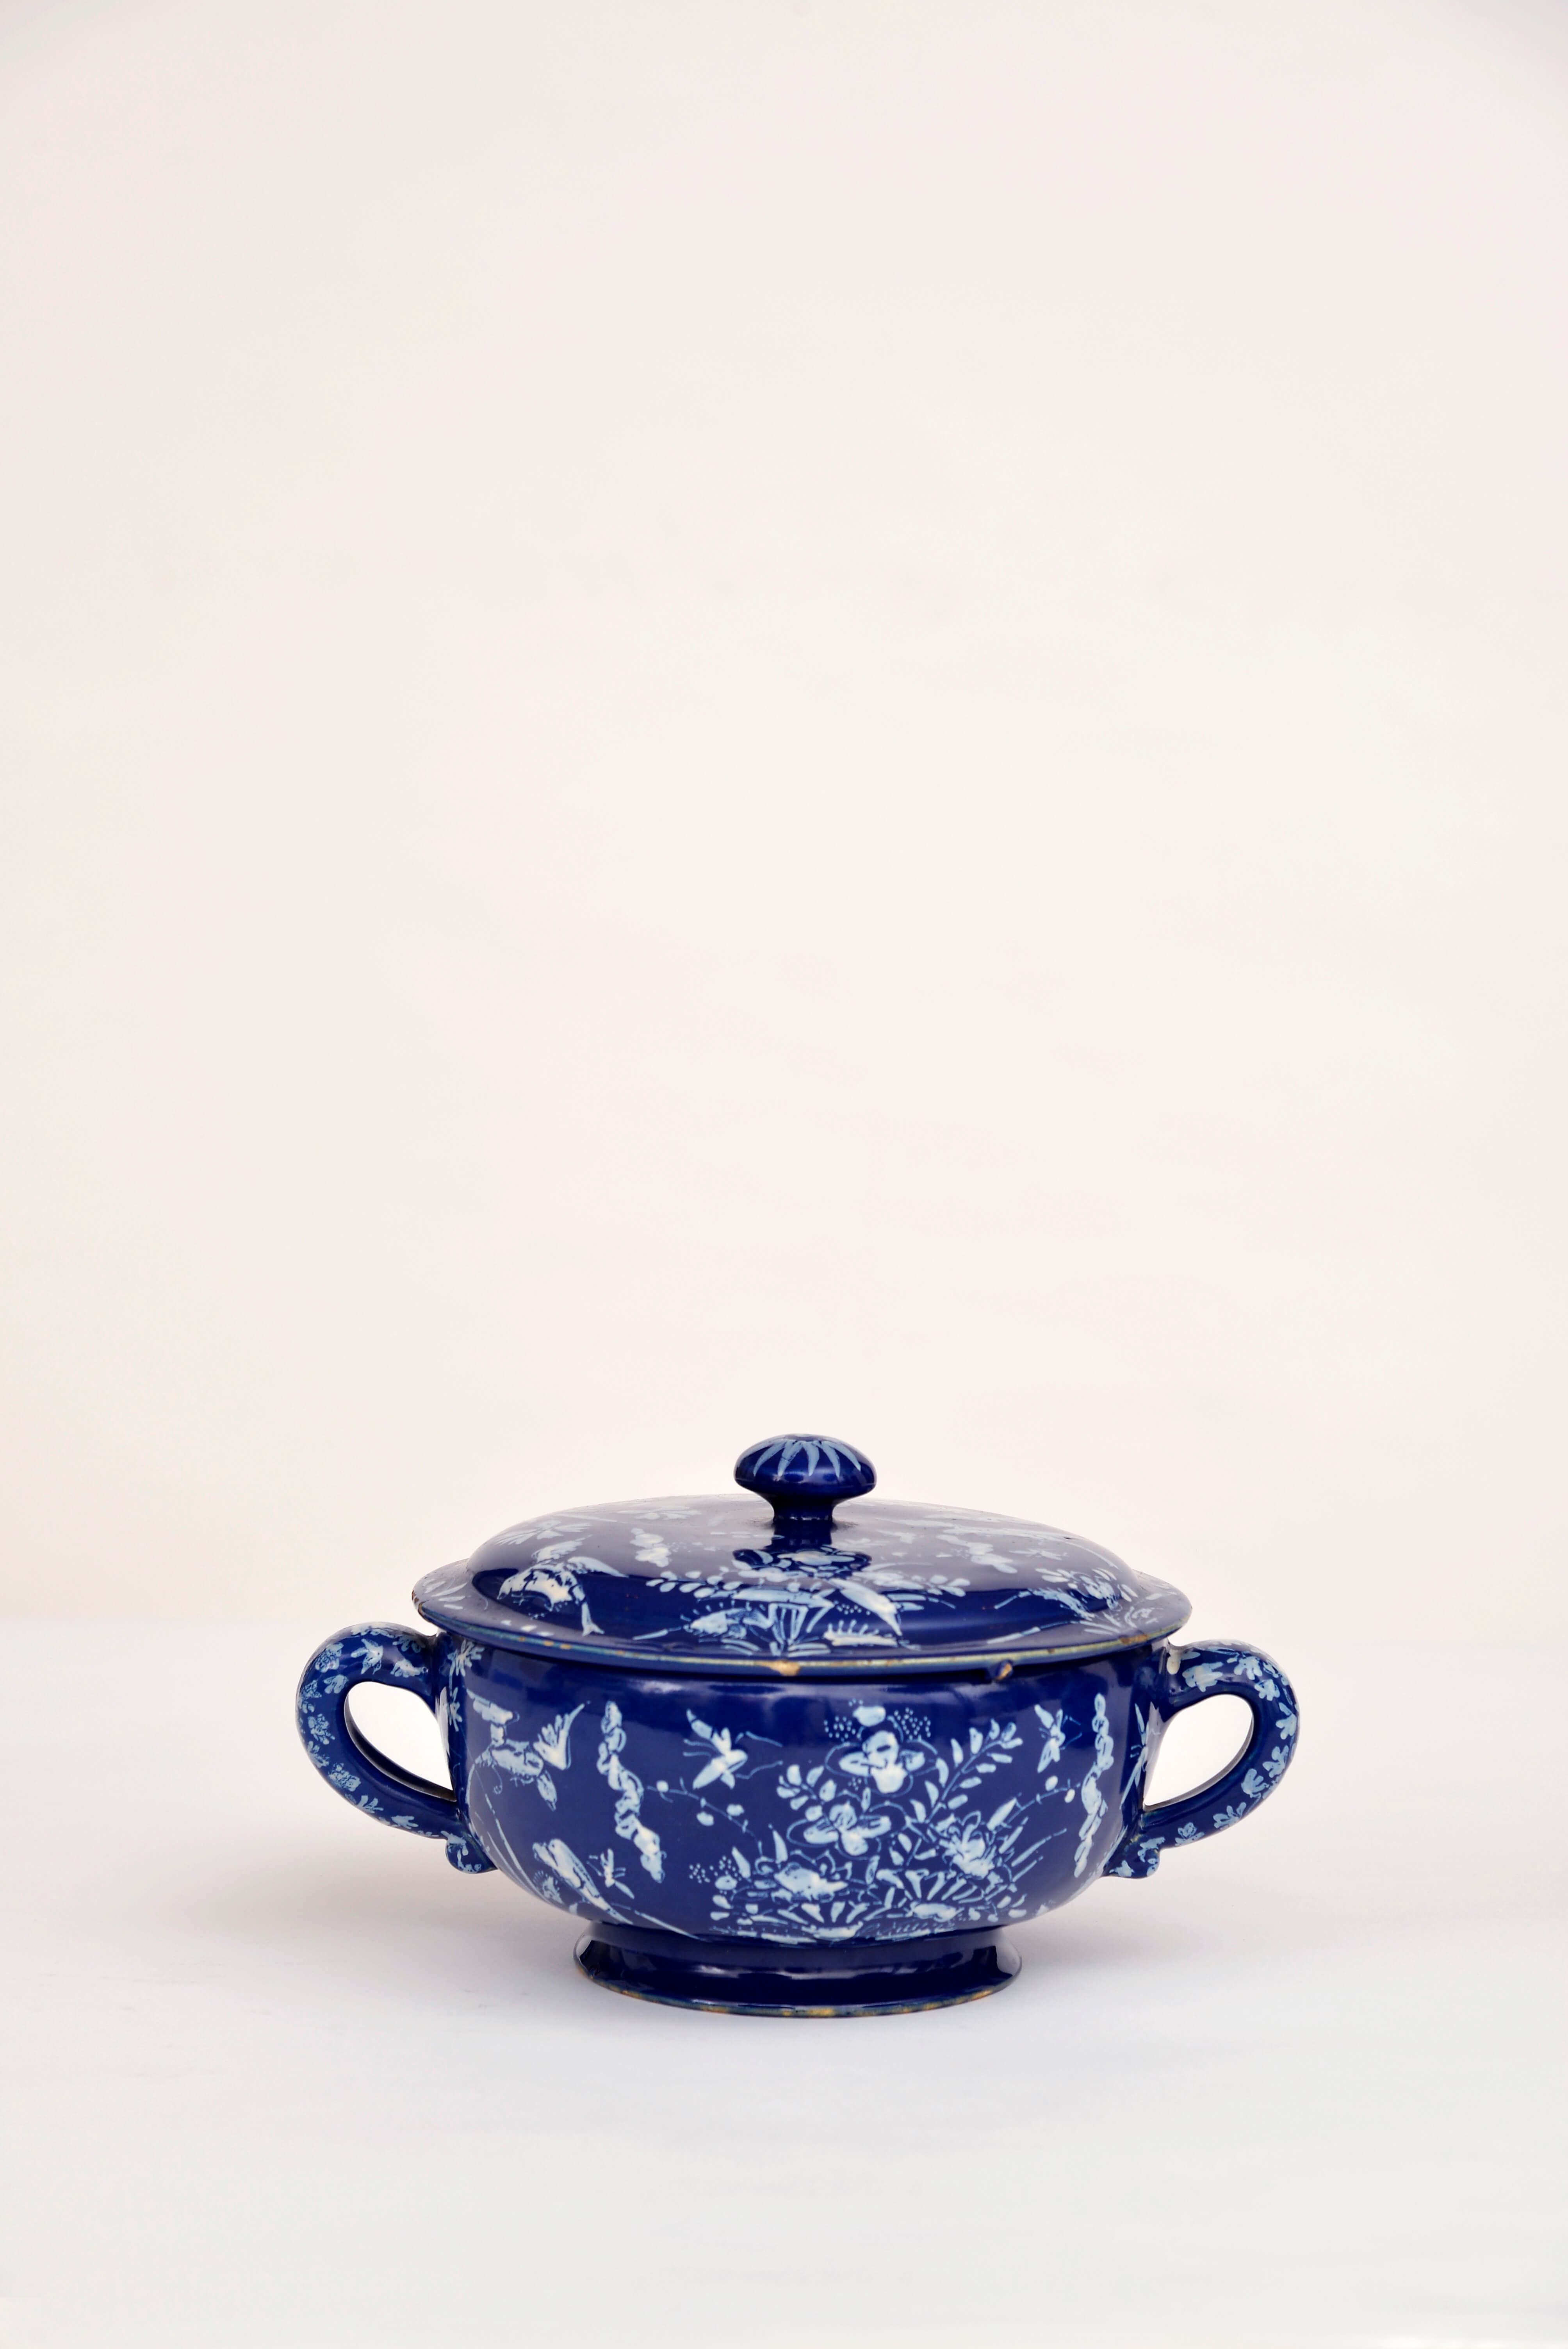 Antique Persian blue delftware